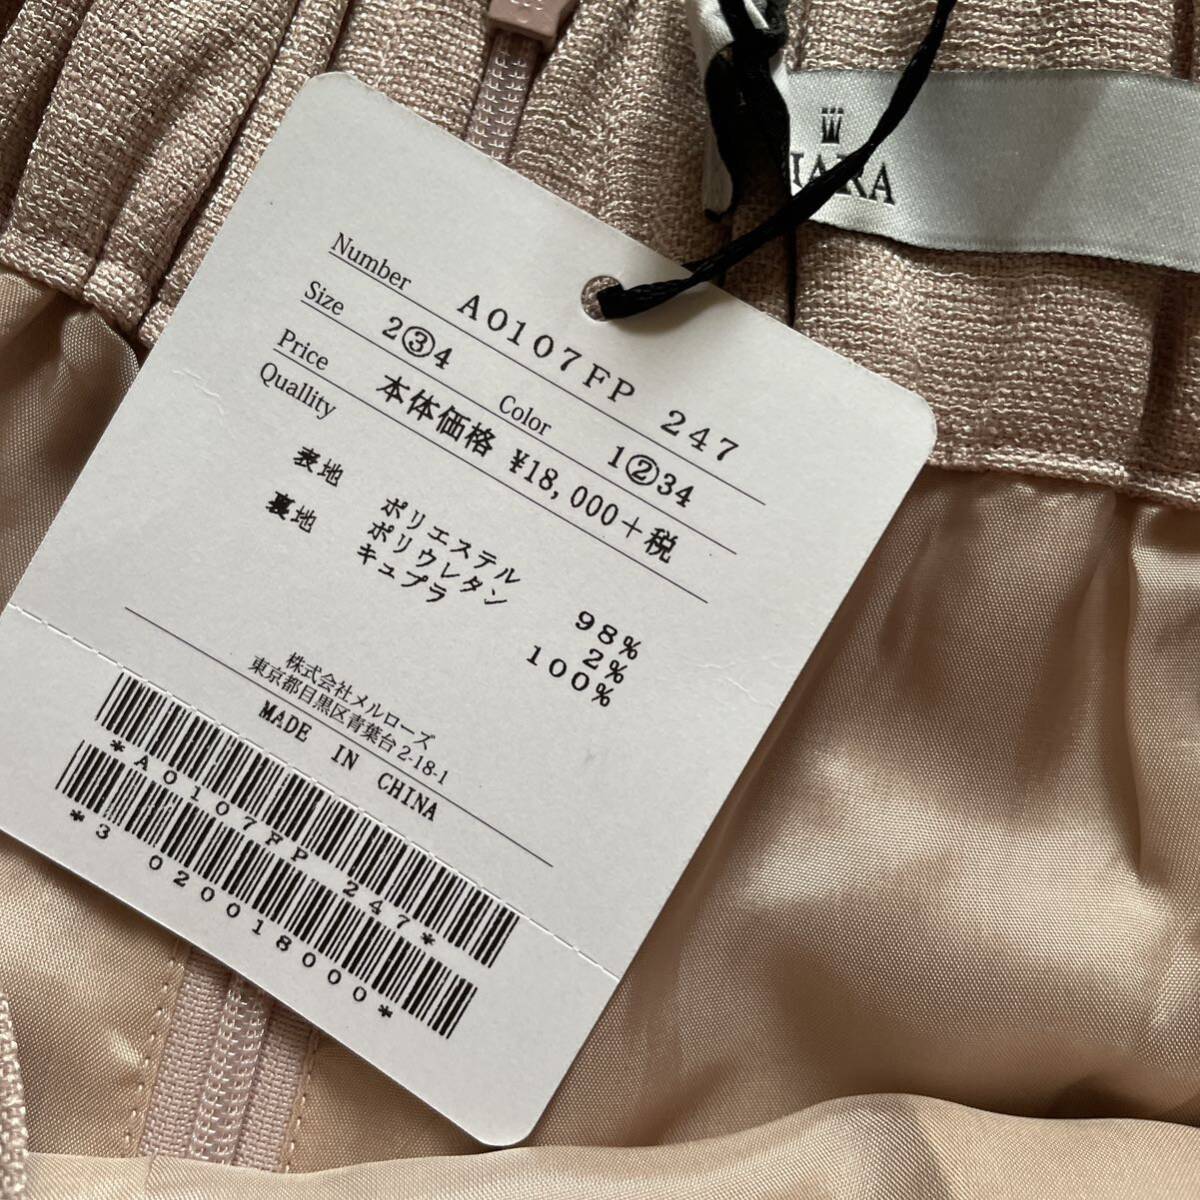  новый товар Tiara обычная цена ¥1 десять тысяч 9800 иен брюки 